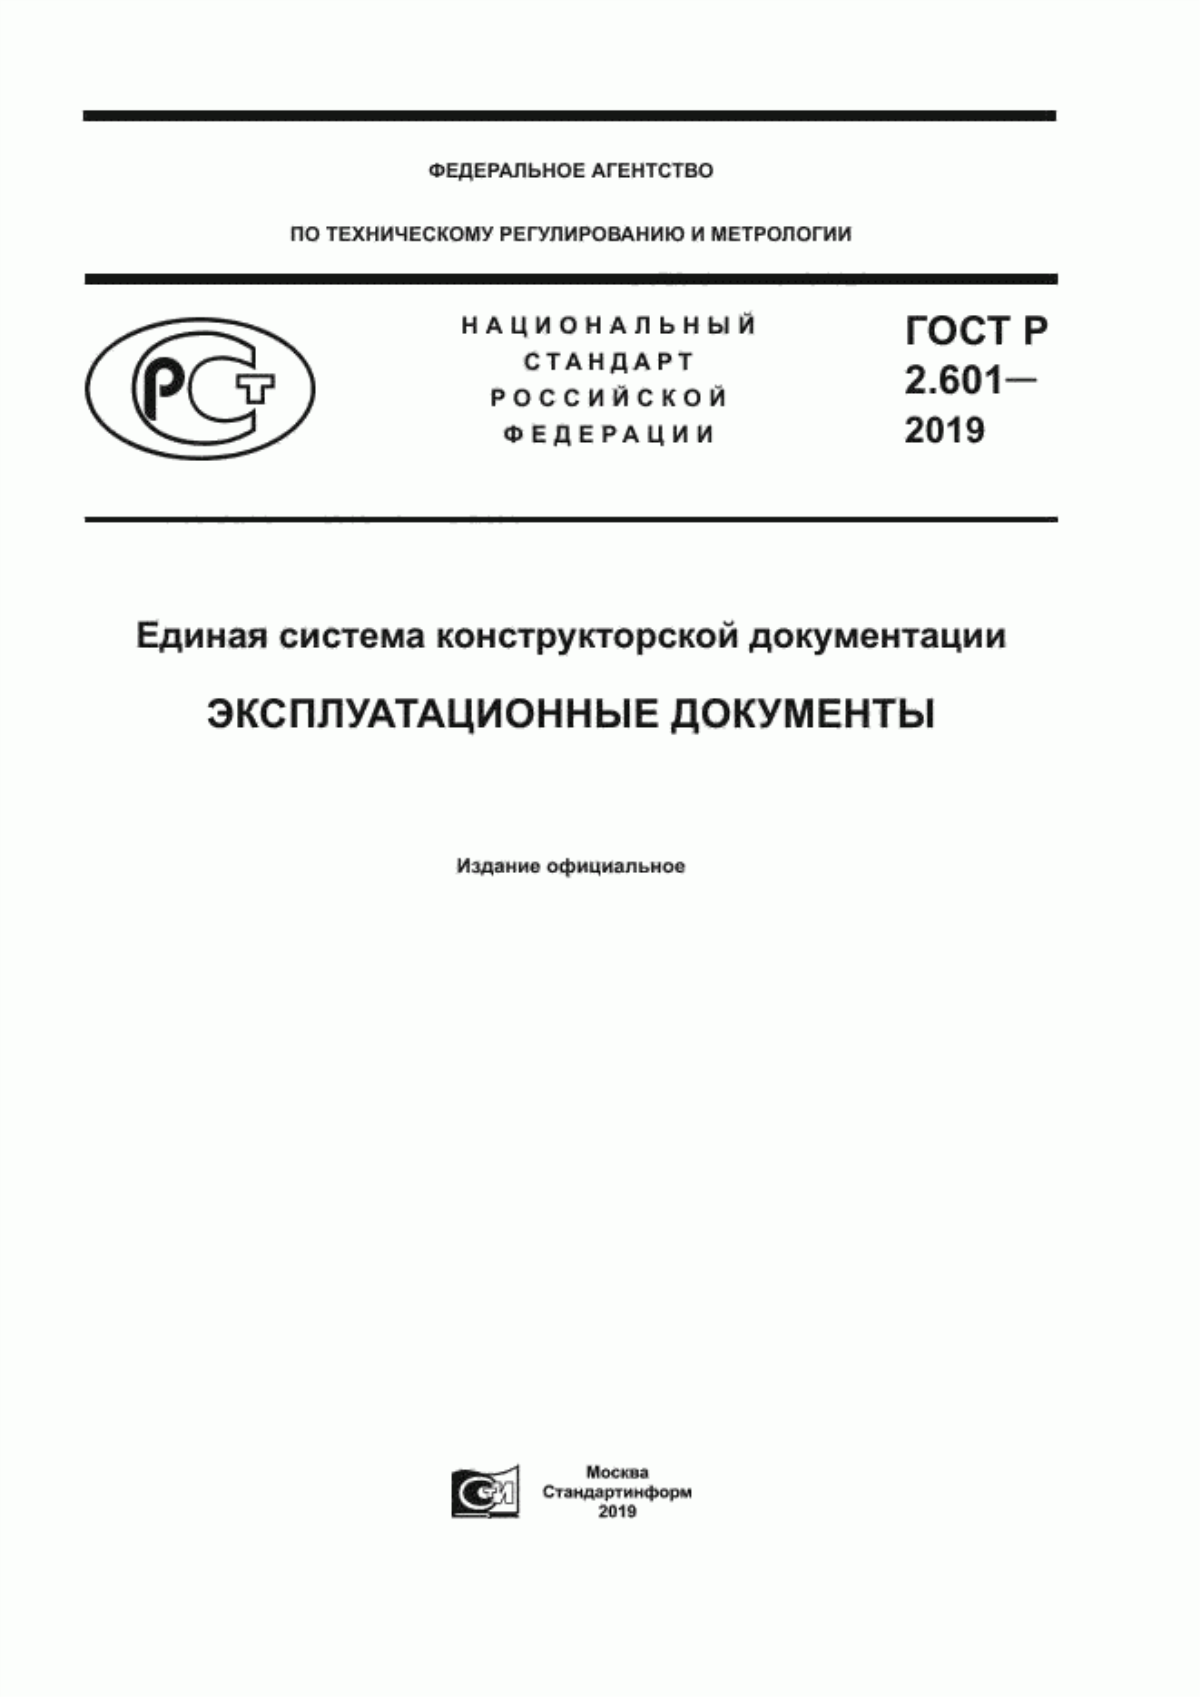 ГОСТ Р 2.601-2019 Единая система конструкторской документации. Эксплуатационные документы